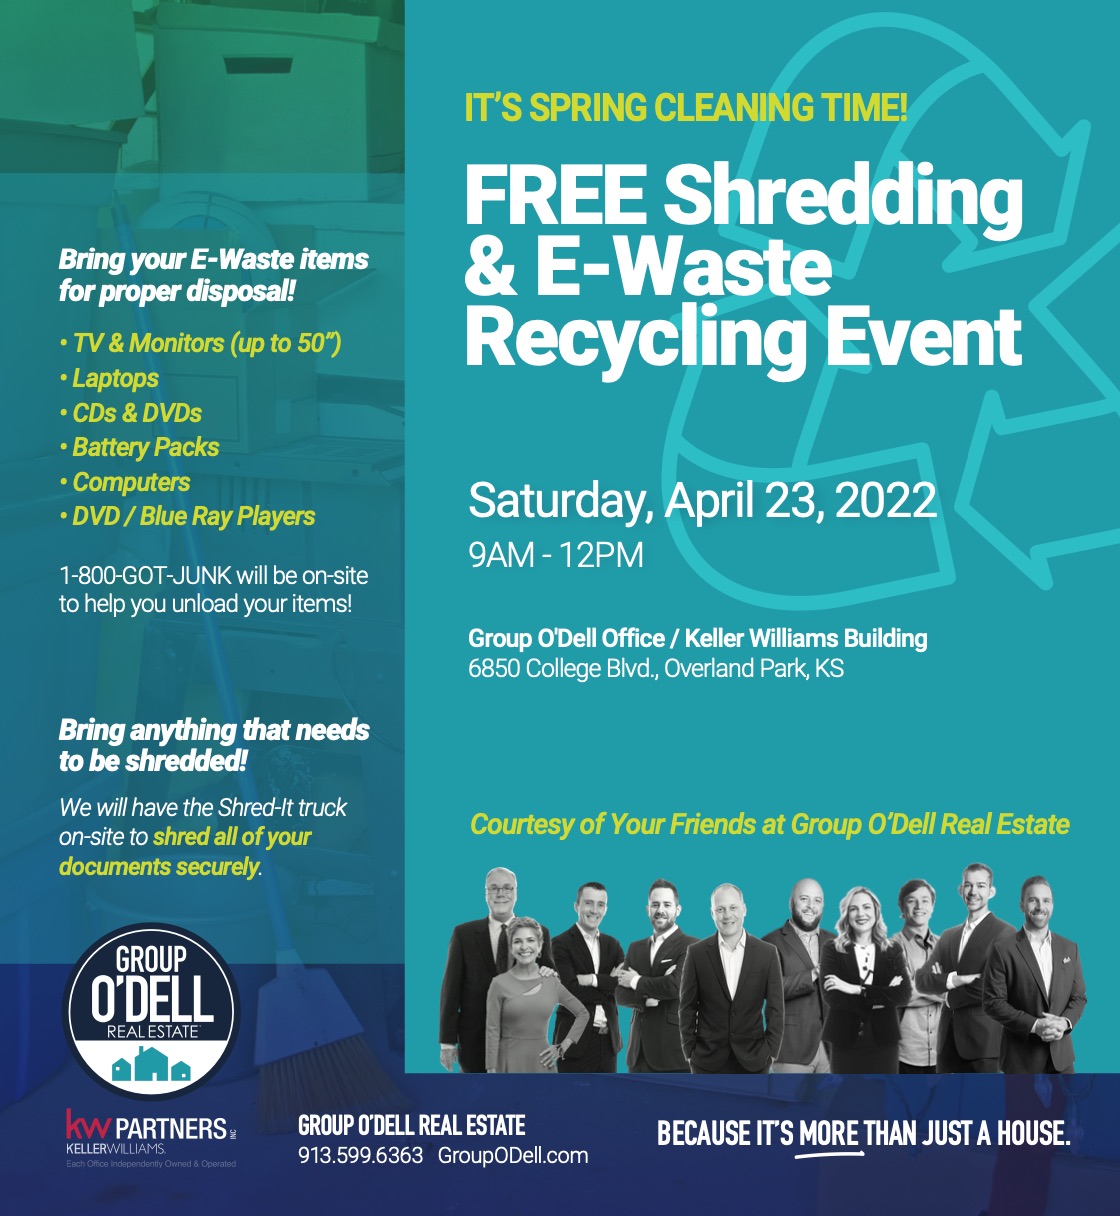 Free Shredding & E-Waste Recycling Event